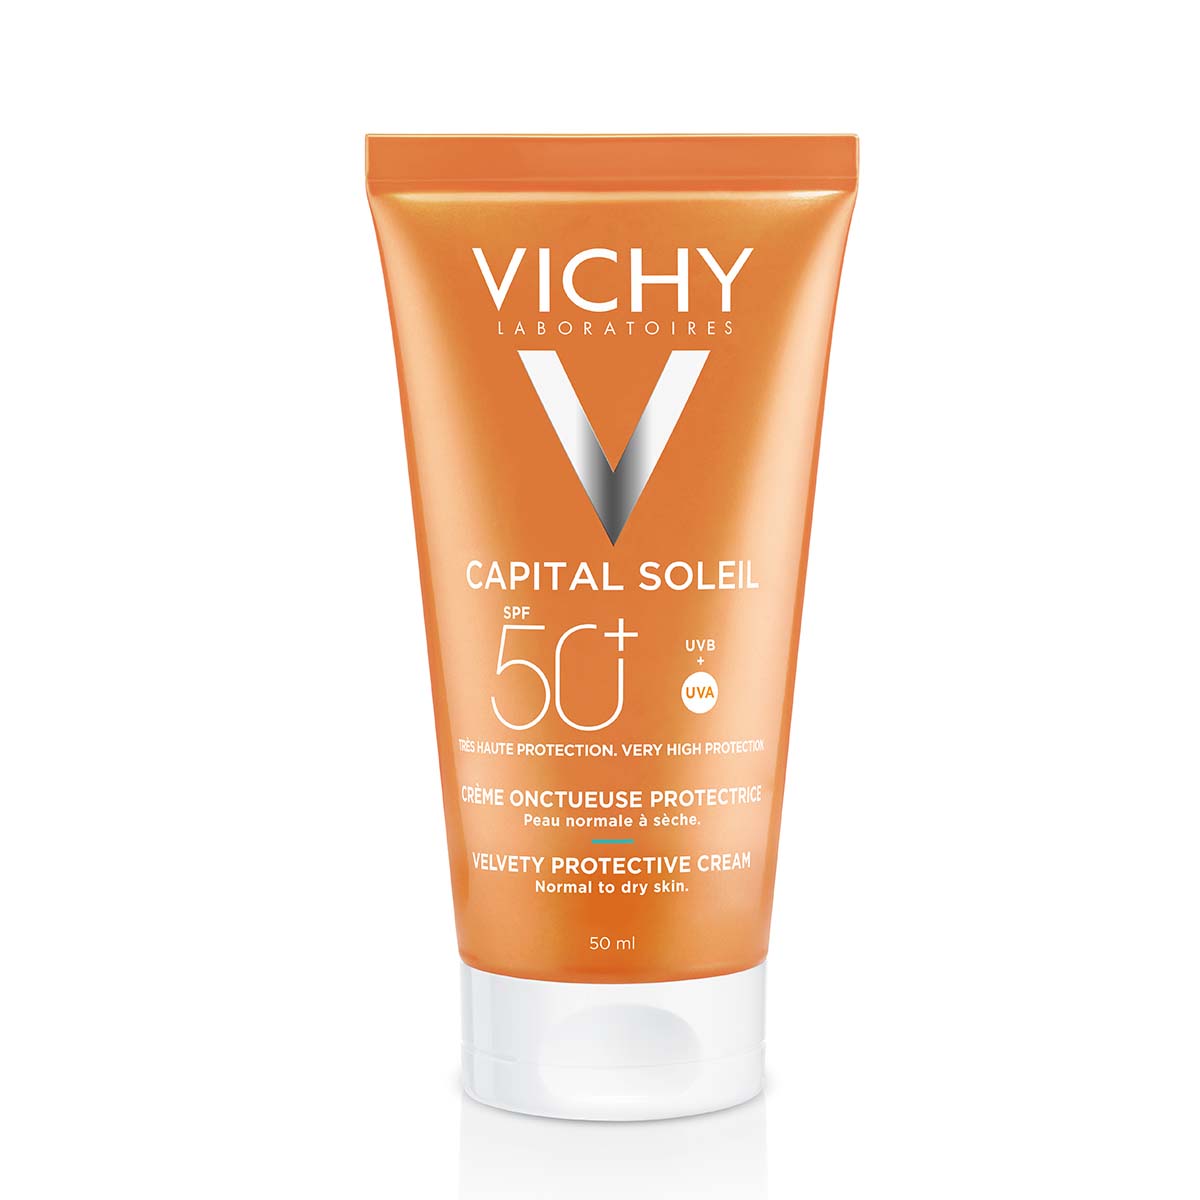 Vichy Capital Soleil Žametna krema za lepši videz kože ZF 50+, 50 ml